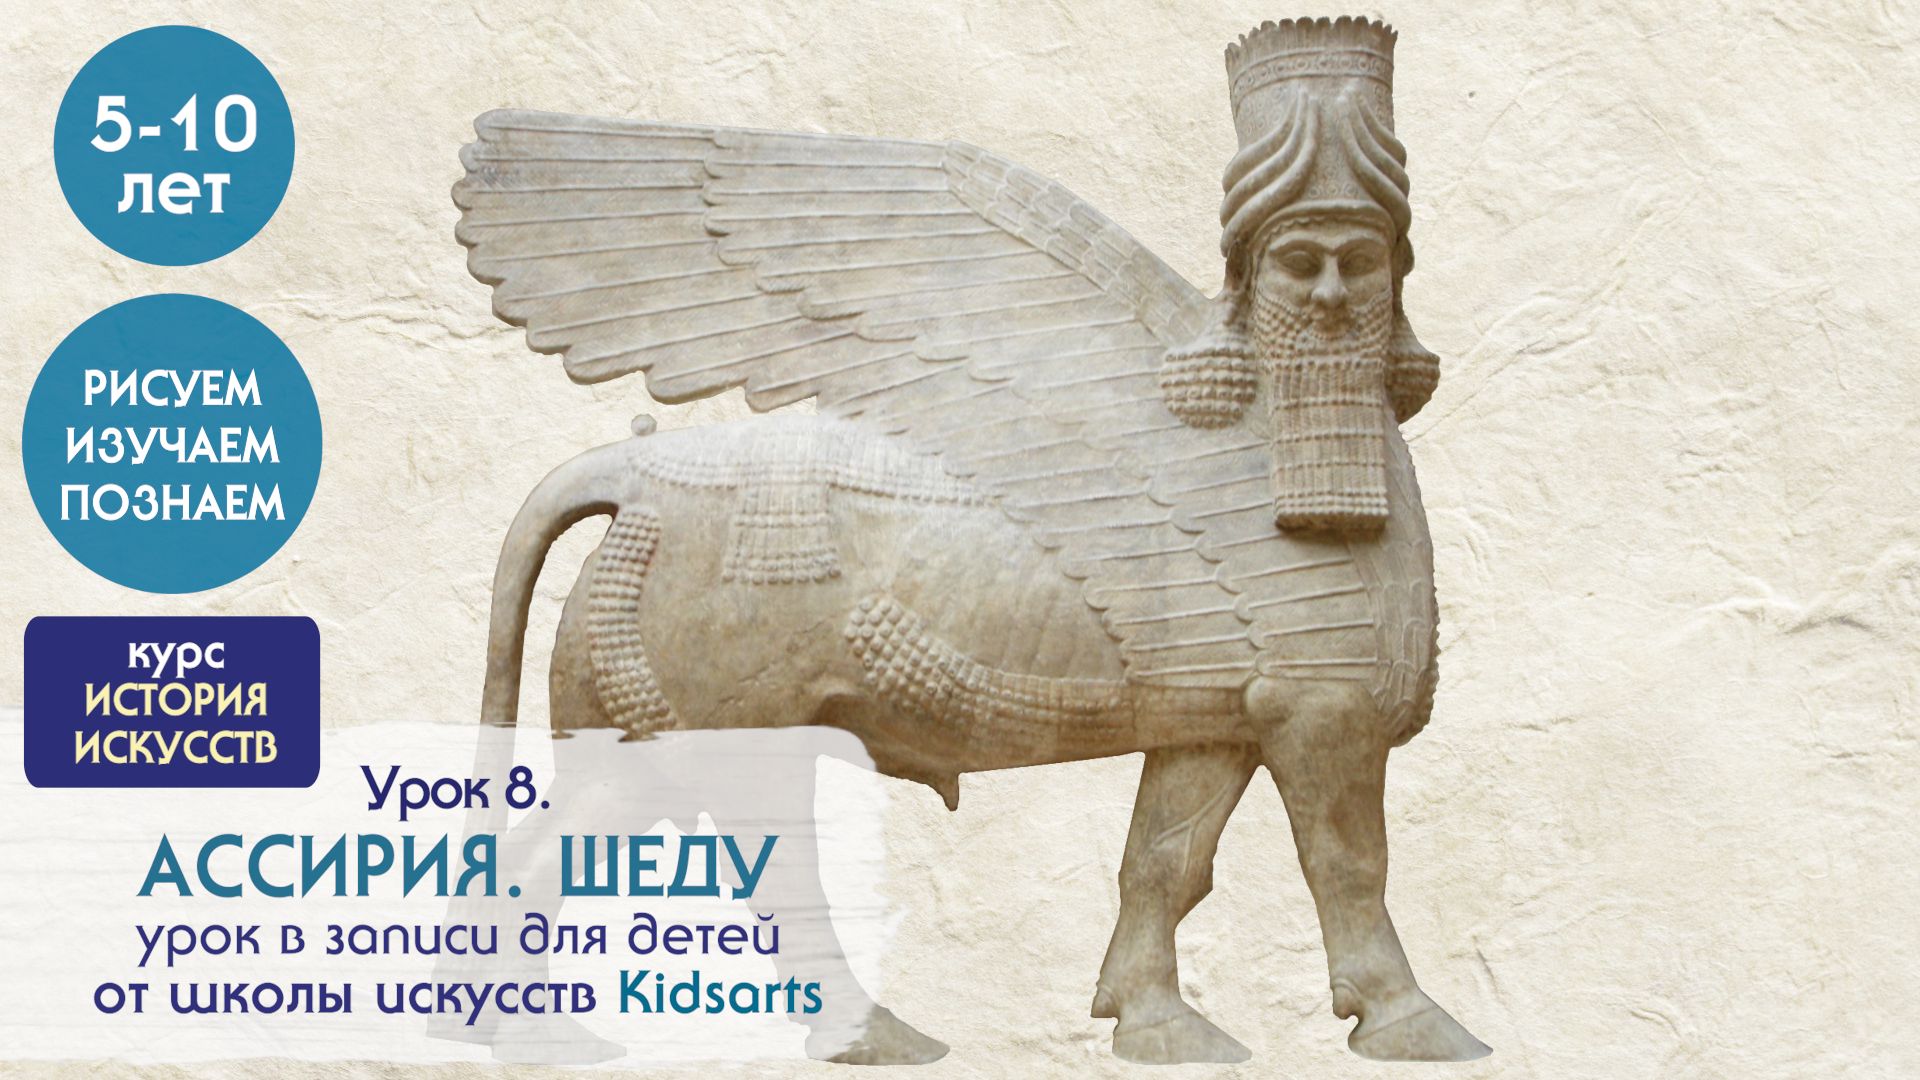 Урок №8 по ЖИВОПИСИ для детей 5 -10 лет. . Древние цивилизации. Ассирия. Шеду